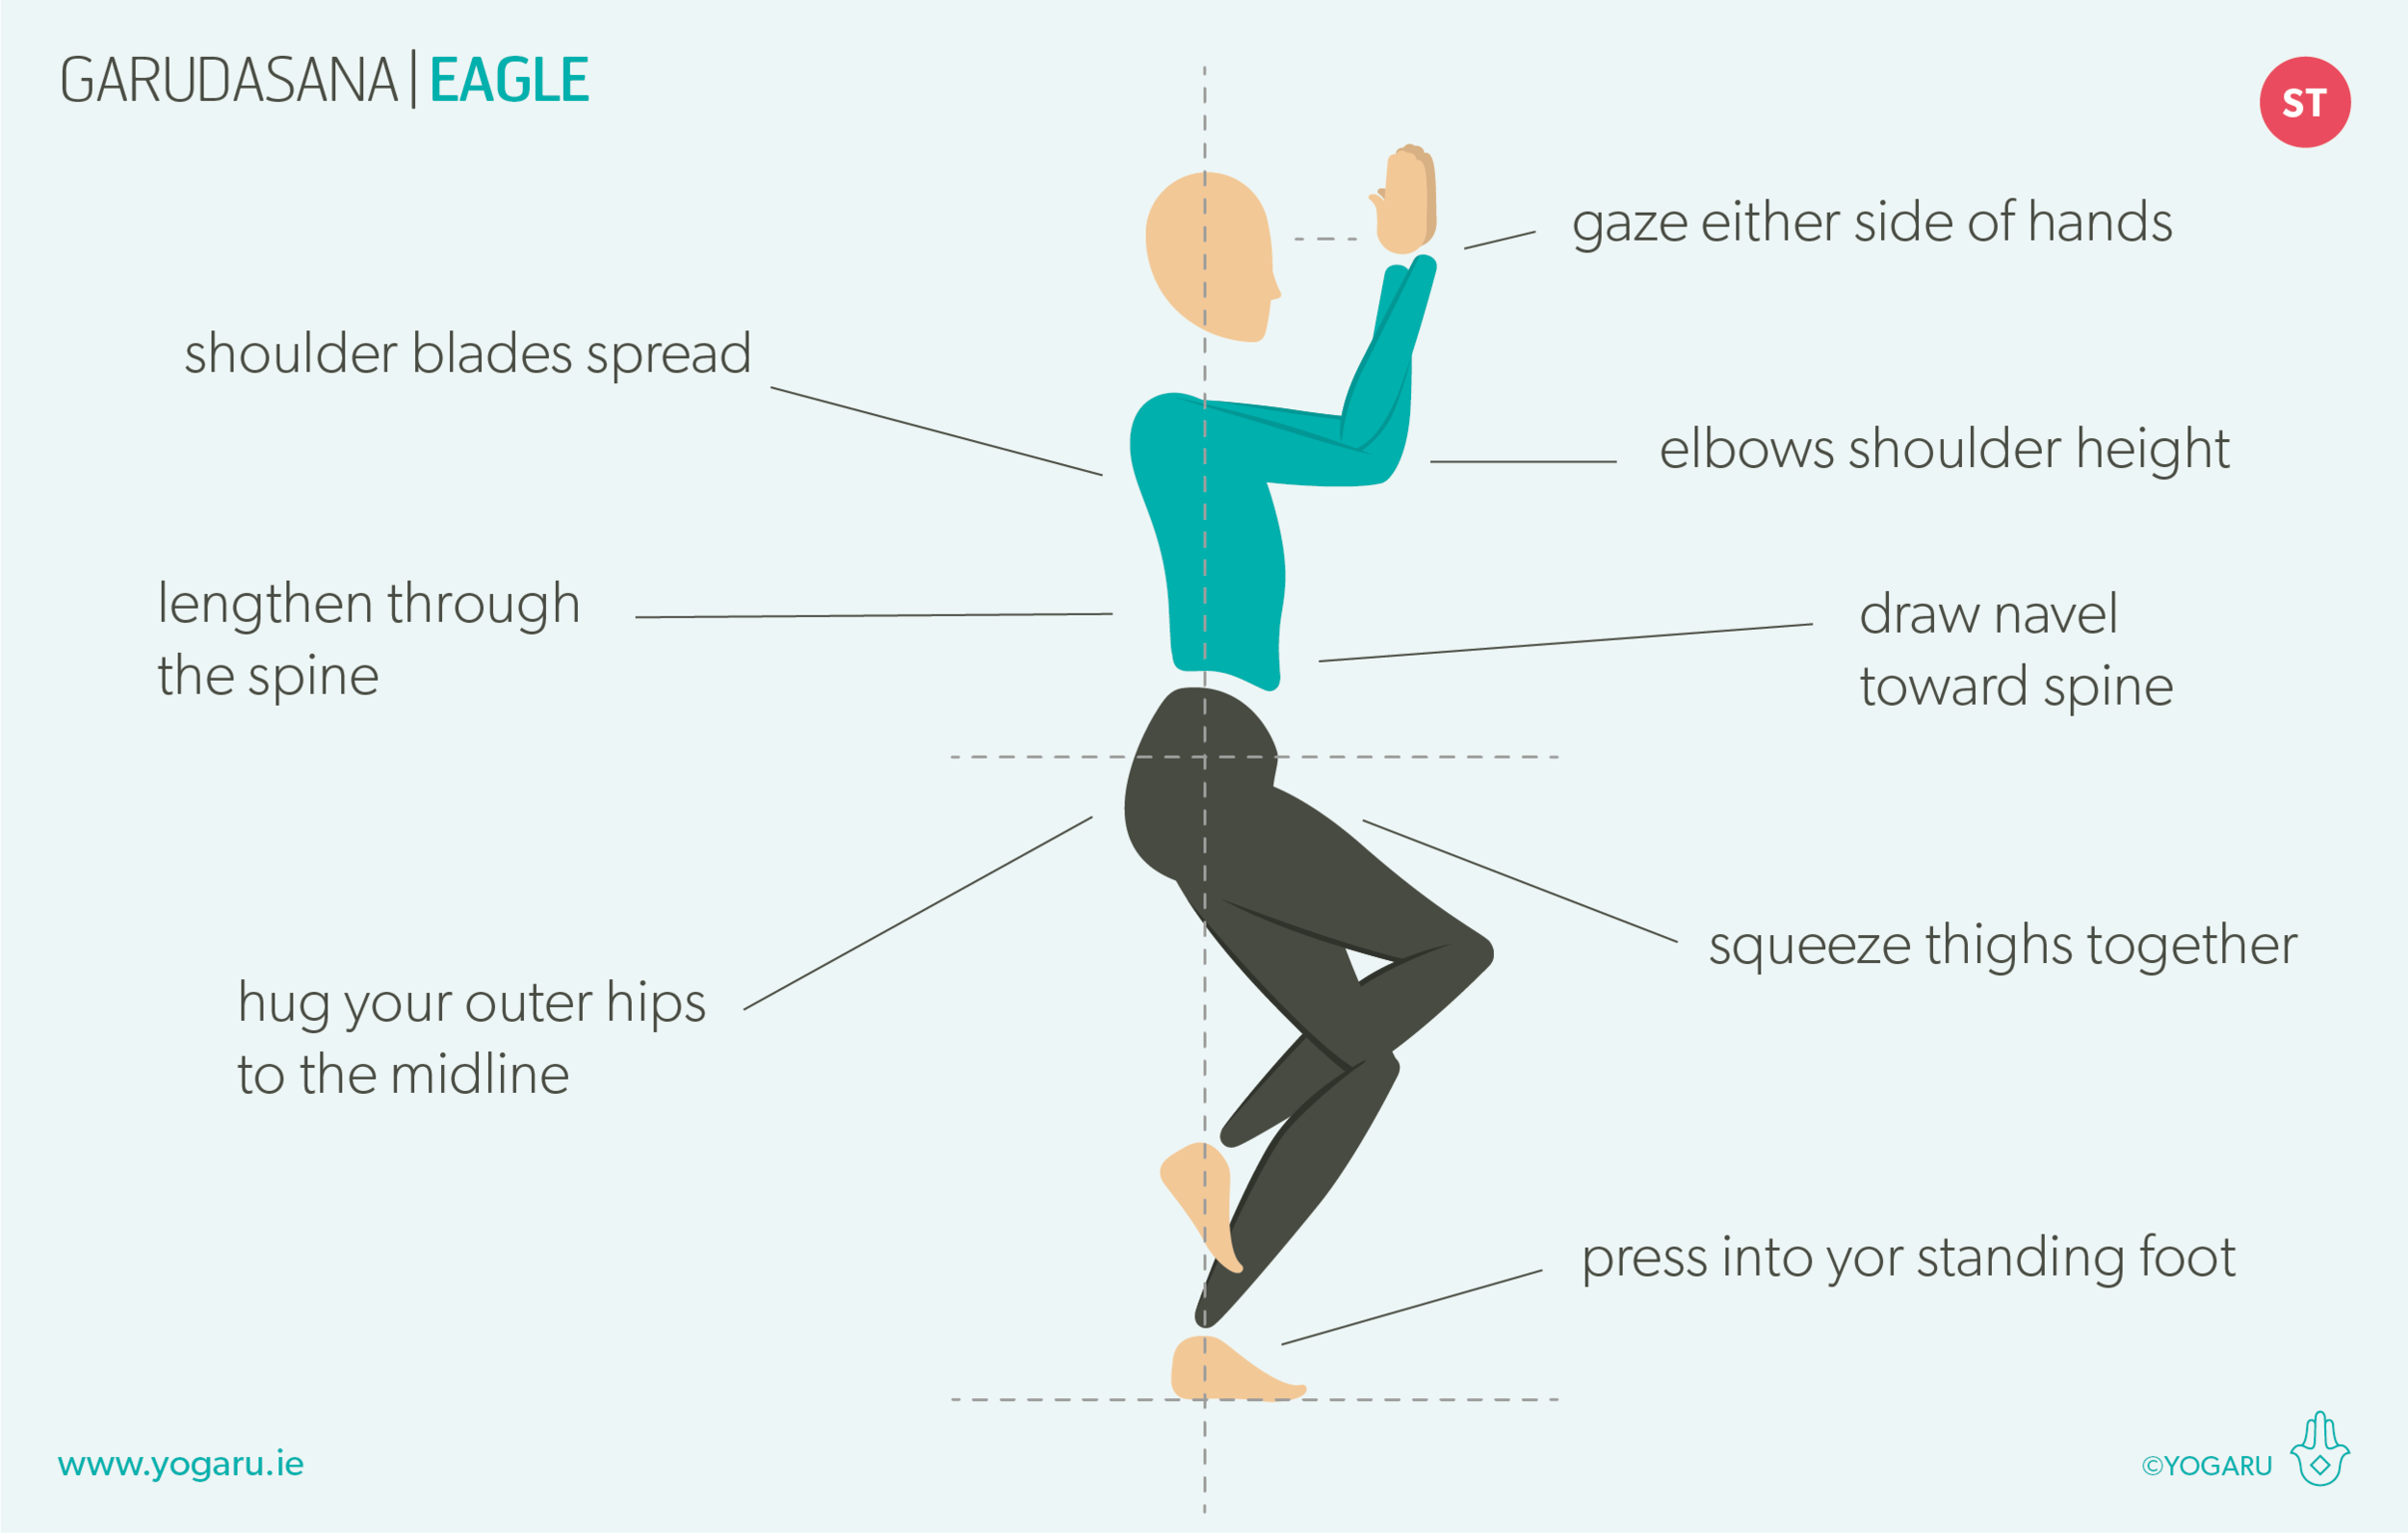 Yoga Pose: Legs Up The Wall |YogaClassPlan.com